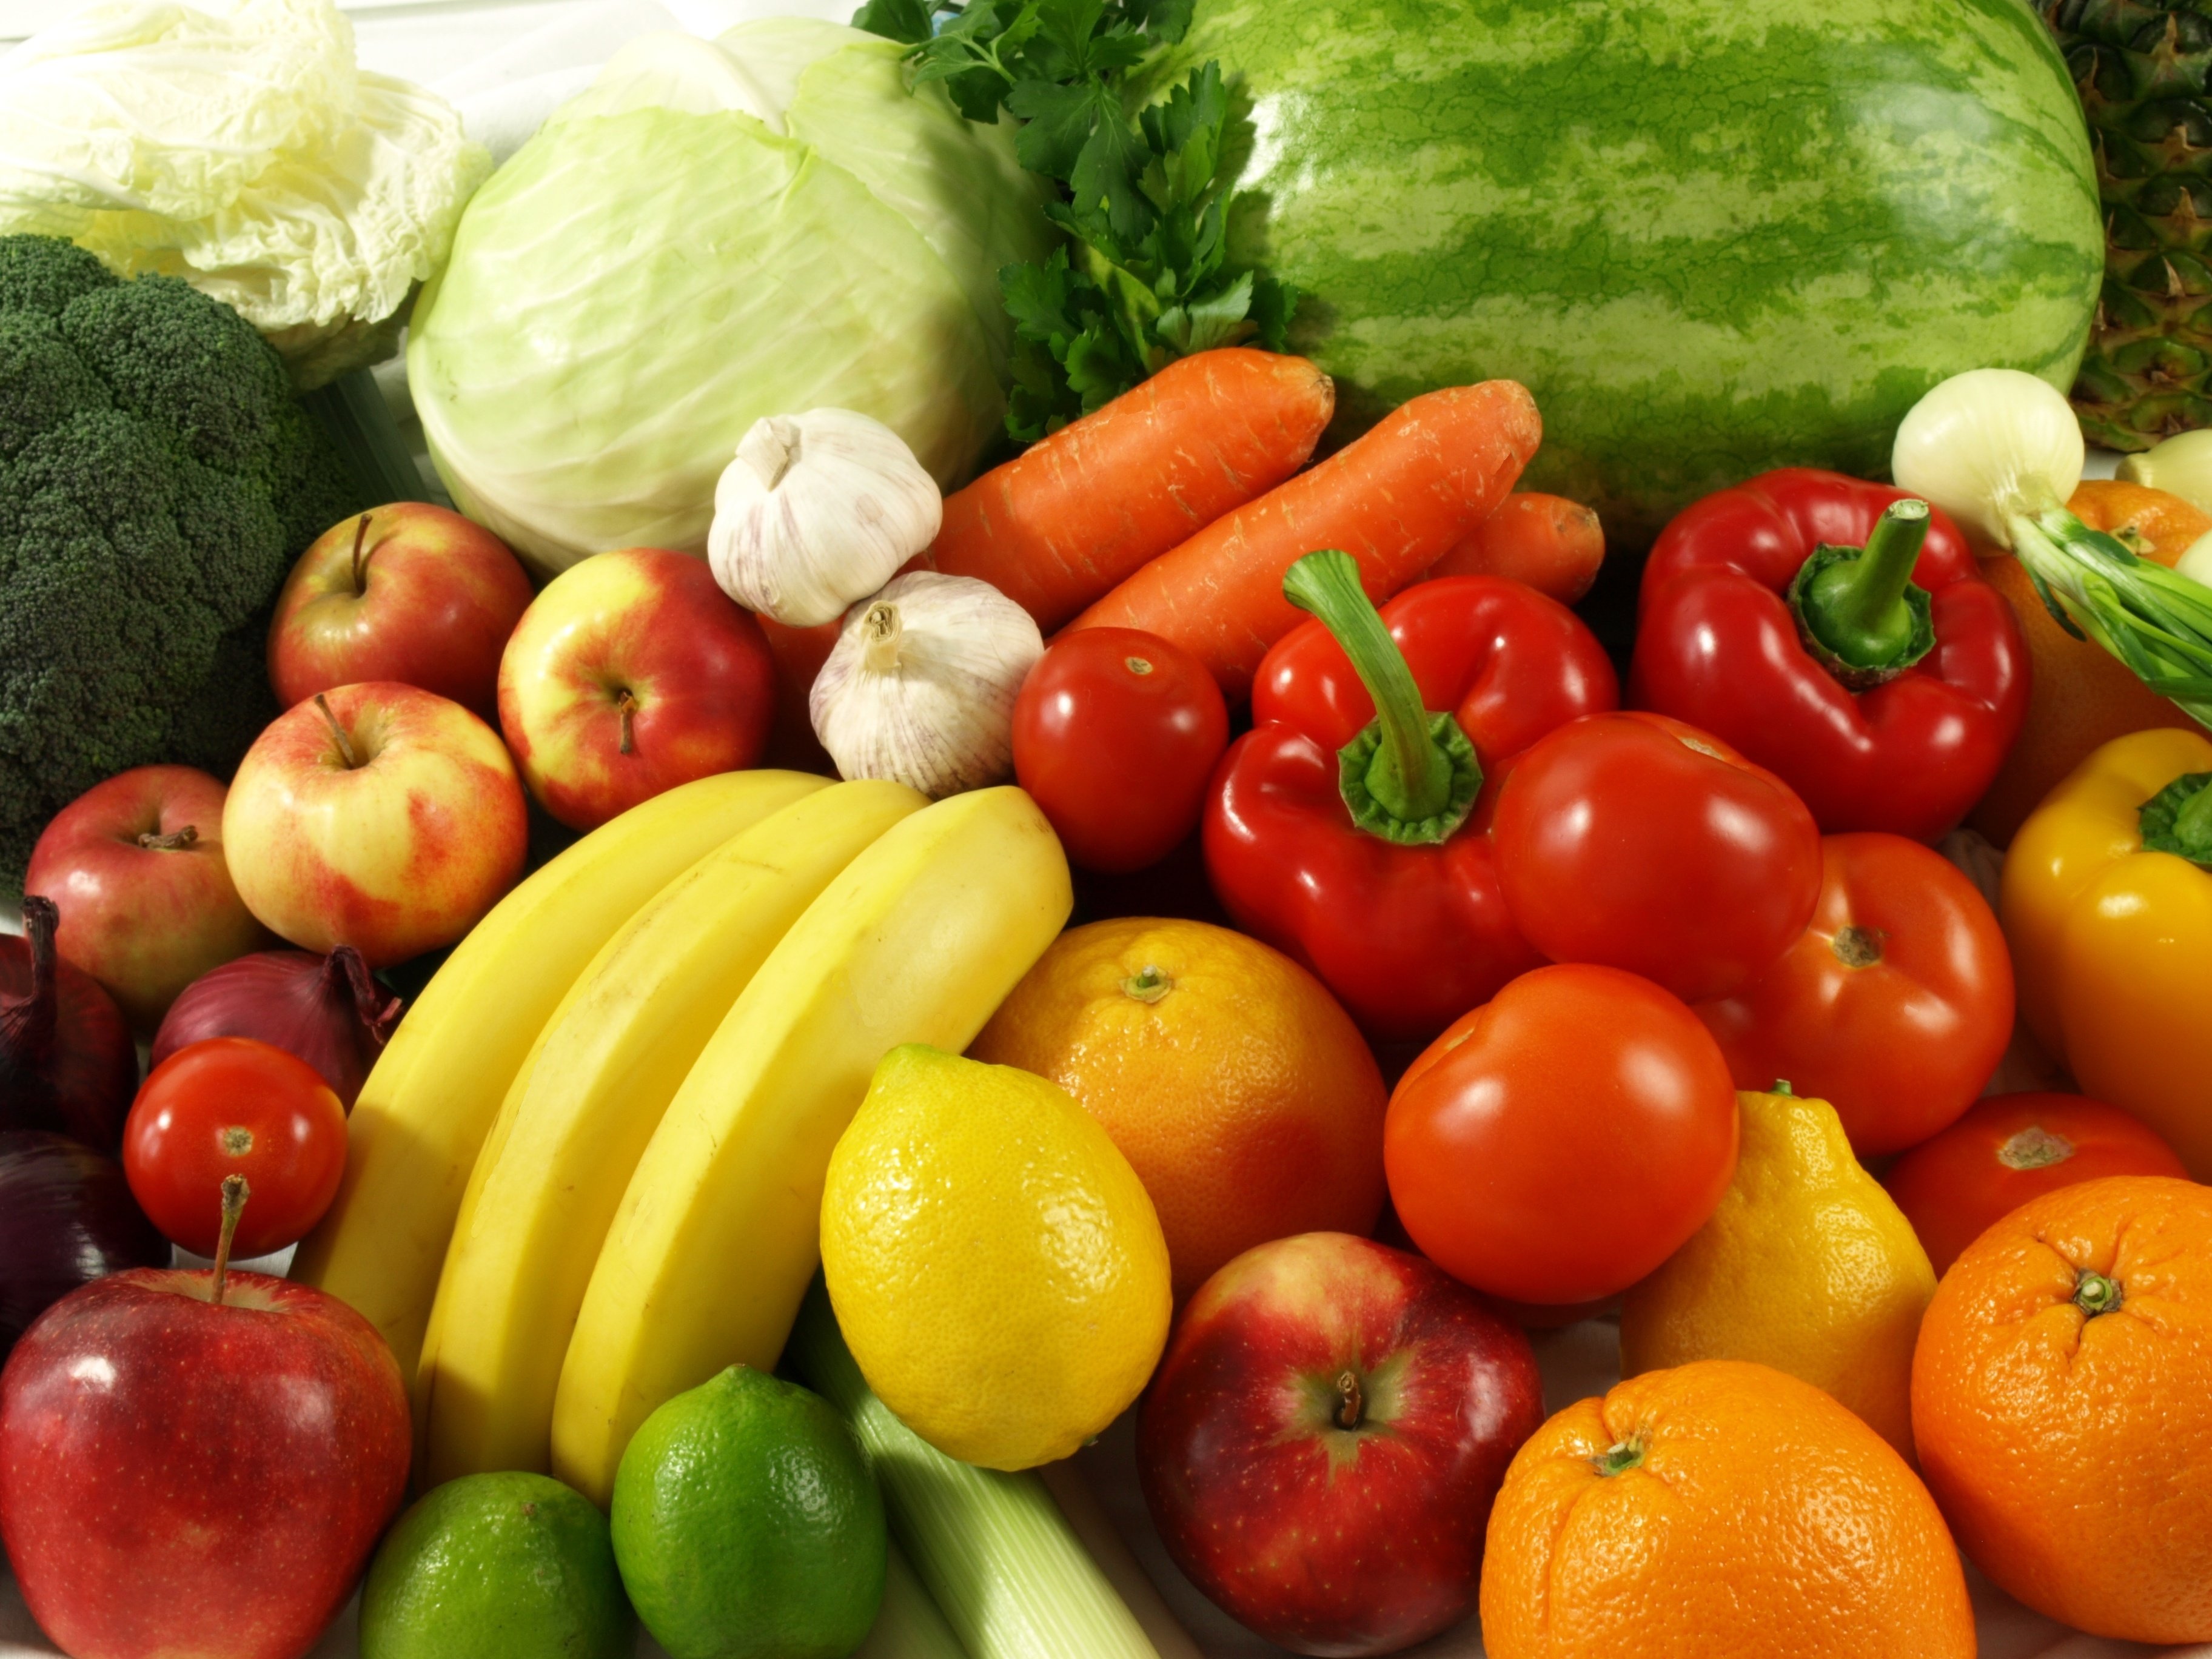 สุขภาพจะดี กินผักหลากสี ต้อง 400 กรัม thaihealth